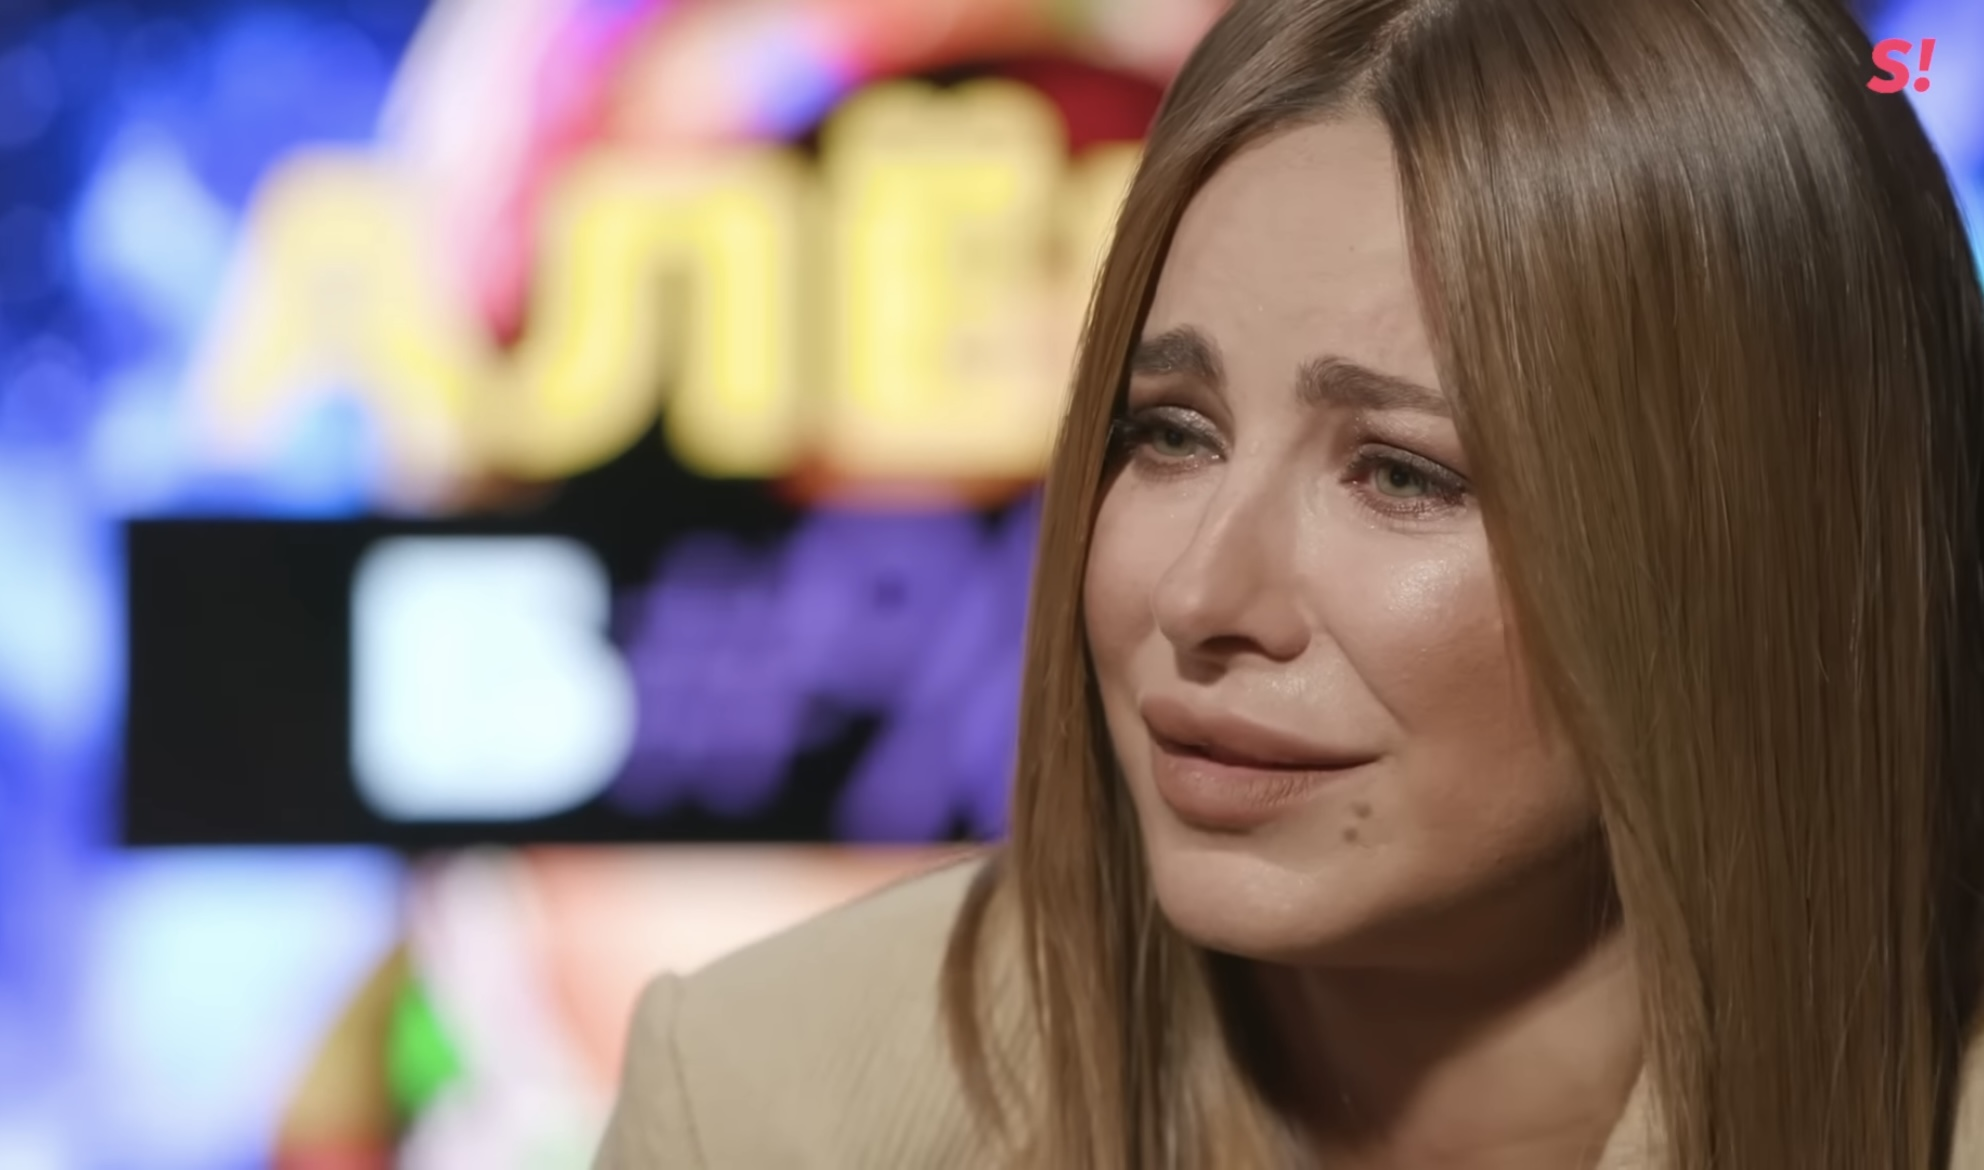 "Оправдание": актриса украинского дубляжа насмешила новой пародией на позорное интервью Ани Лорак. Видео